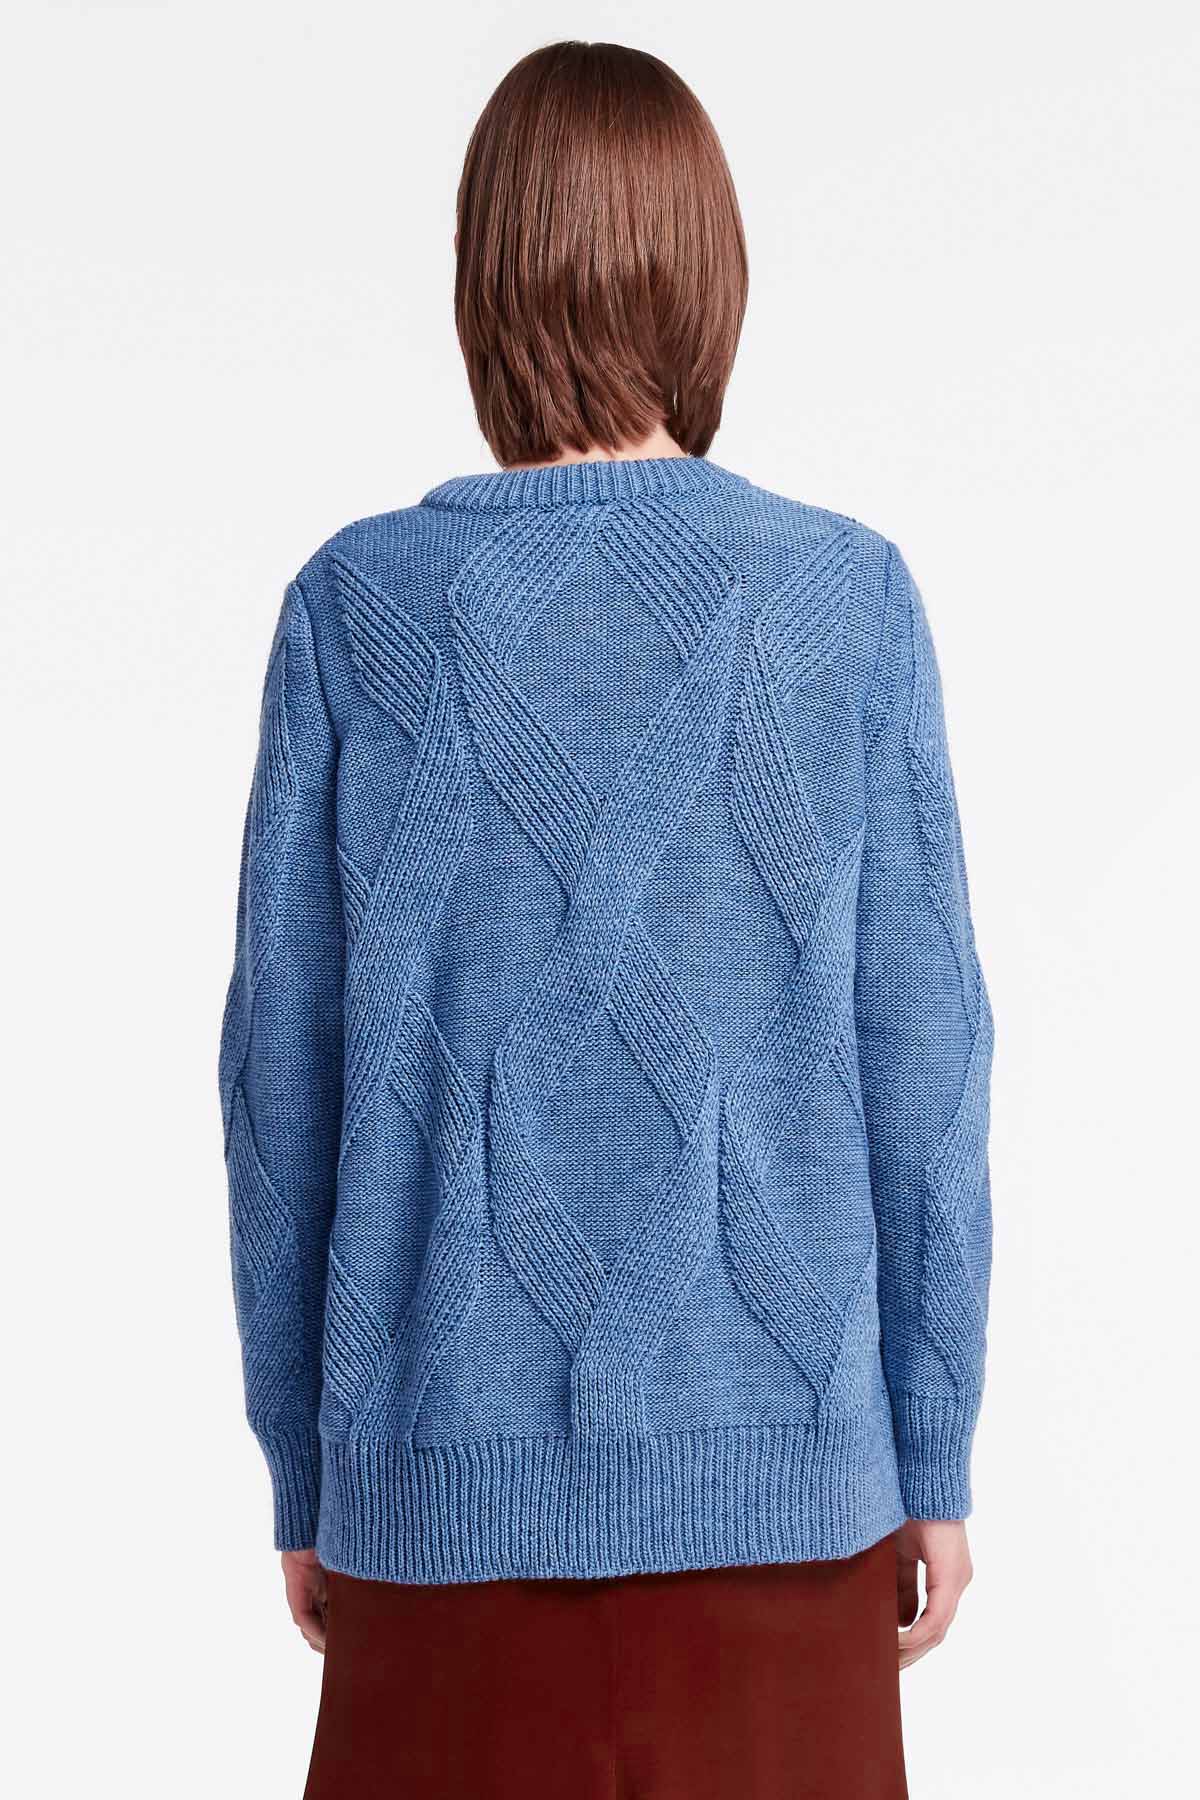 Blue free knit sweater, photo 4